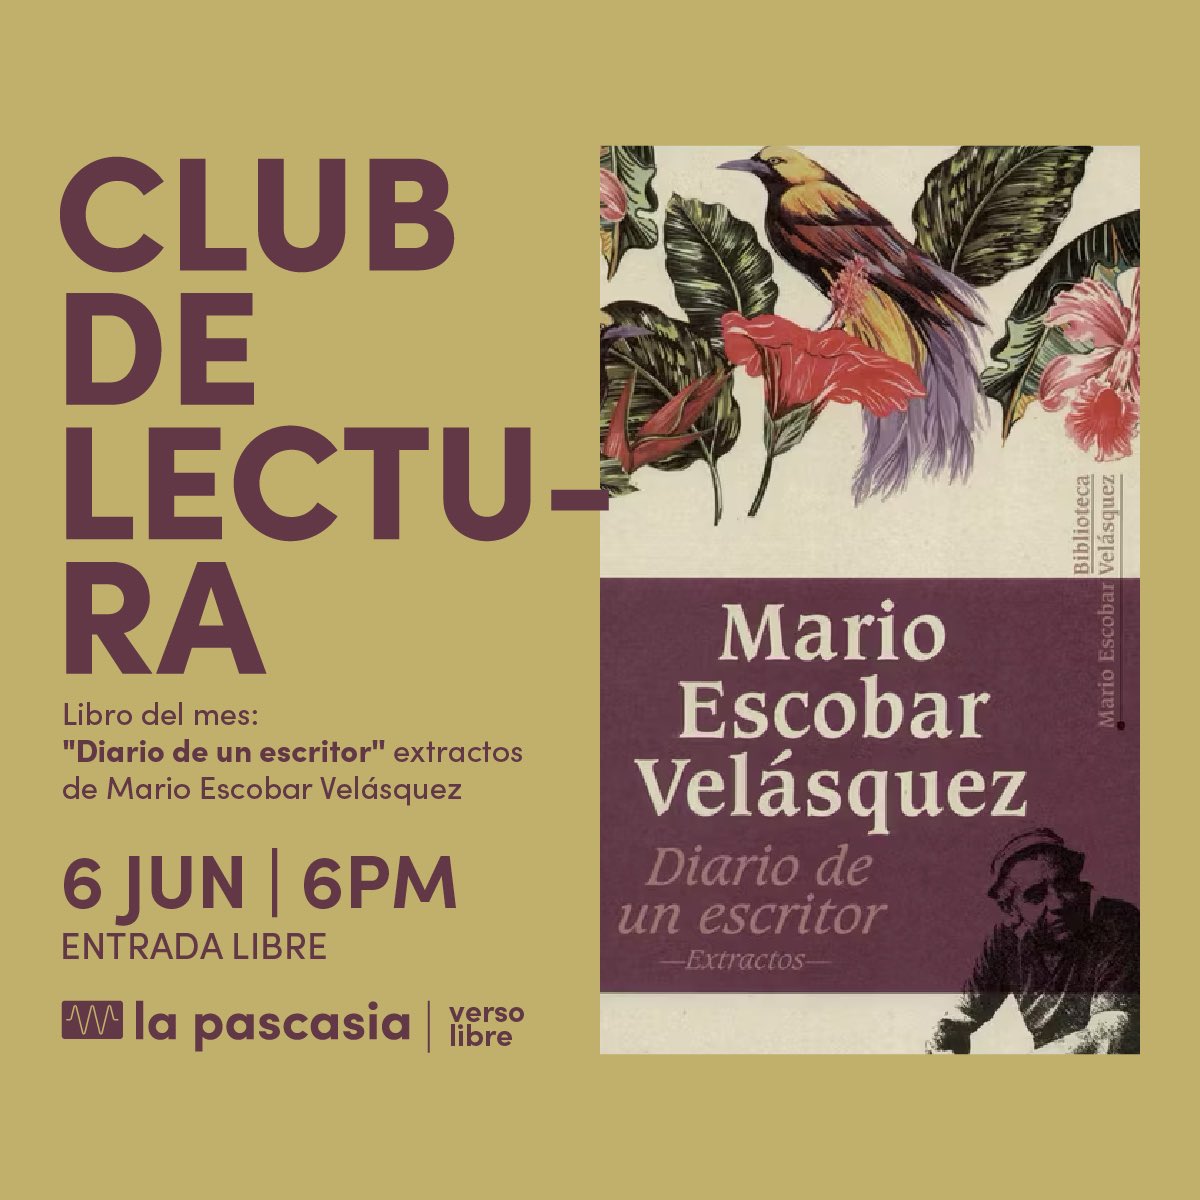 Diario de un escritor de Mario Escobar Velásquez es el próximo libro invitado al club de lectura de La Pascasia.
Si quieren participar, basta con leerlo y llegar al encuentro.